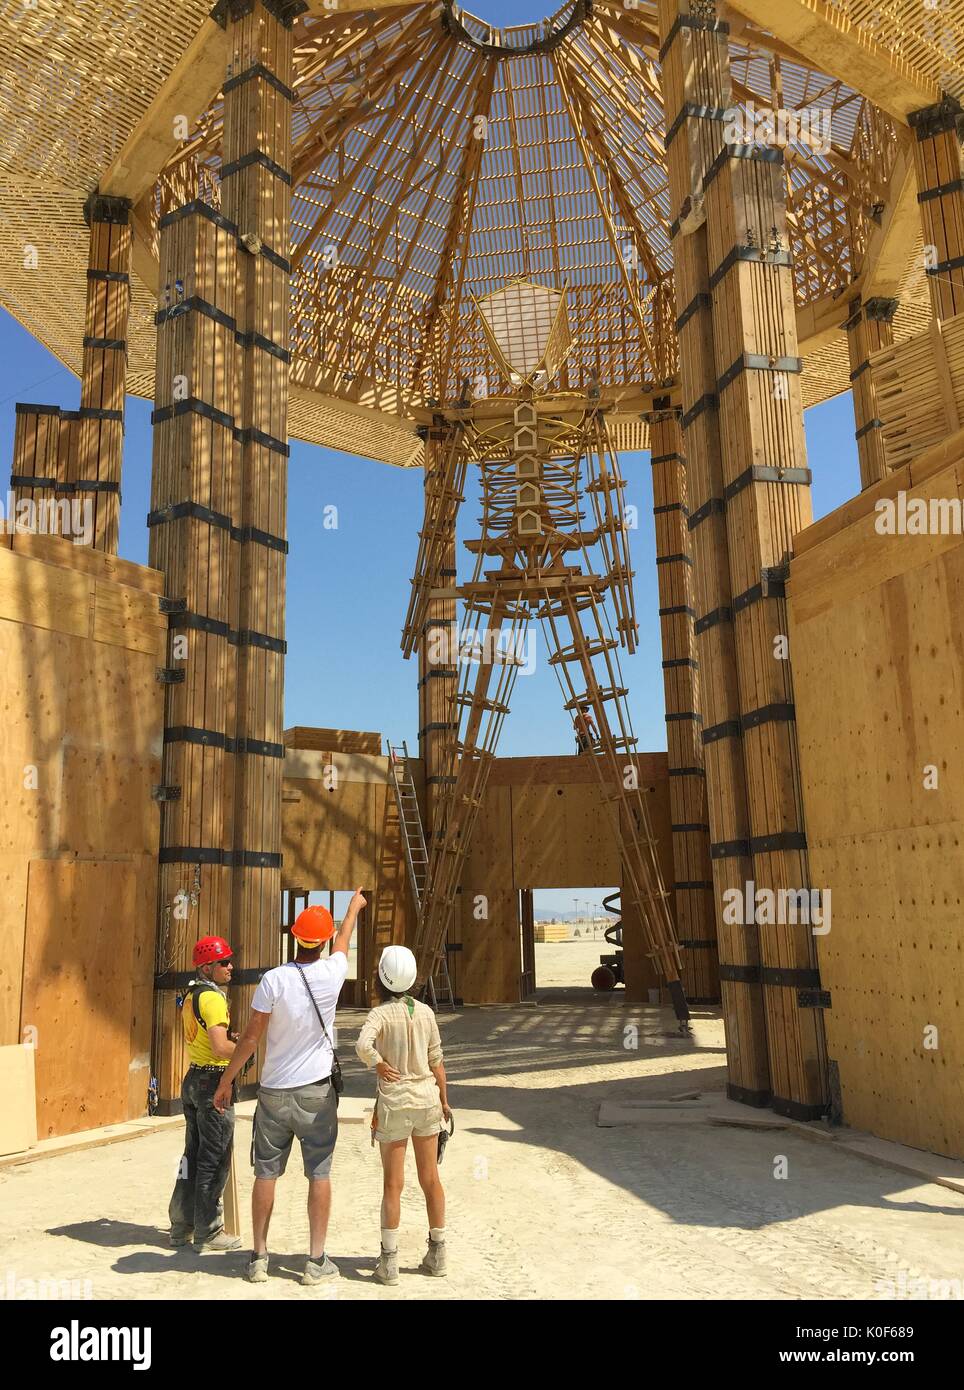 Les inspecteurs de sécurité inspecter le Burning Man sculpture au centre de la playa avant le début de l'assemblée annuelle du festival Burning Man dans le désert, le 21 août 2017 Black Rock City, Nevada. Le festival annuel attire 70 000 visiteurs dans l'une des régions les plus isolées et les déserts inhospitaliers en Amérique. Banque D'Images